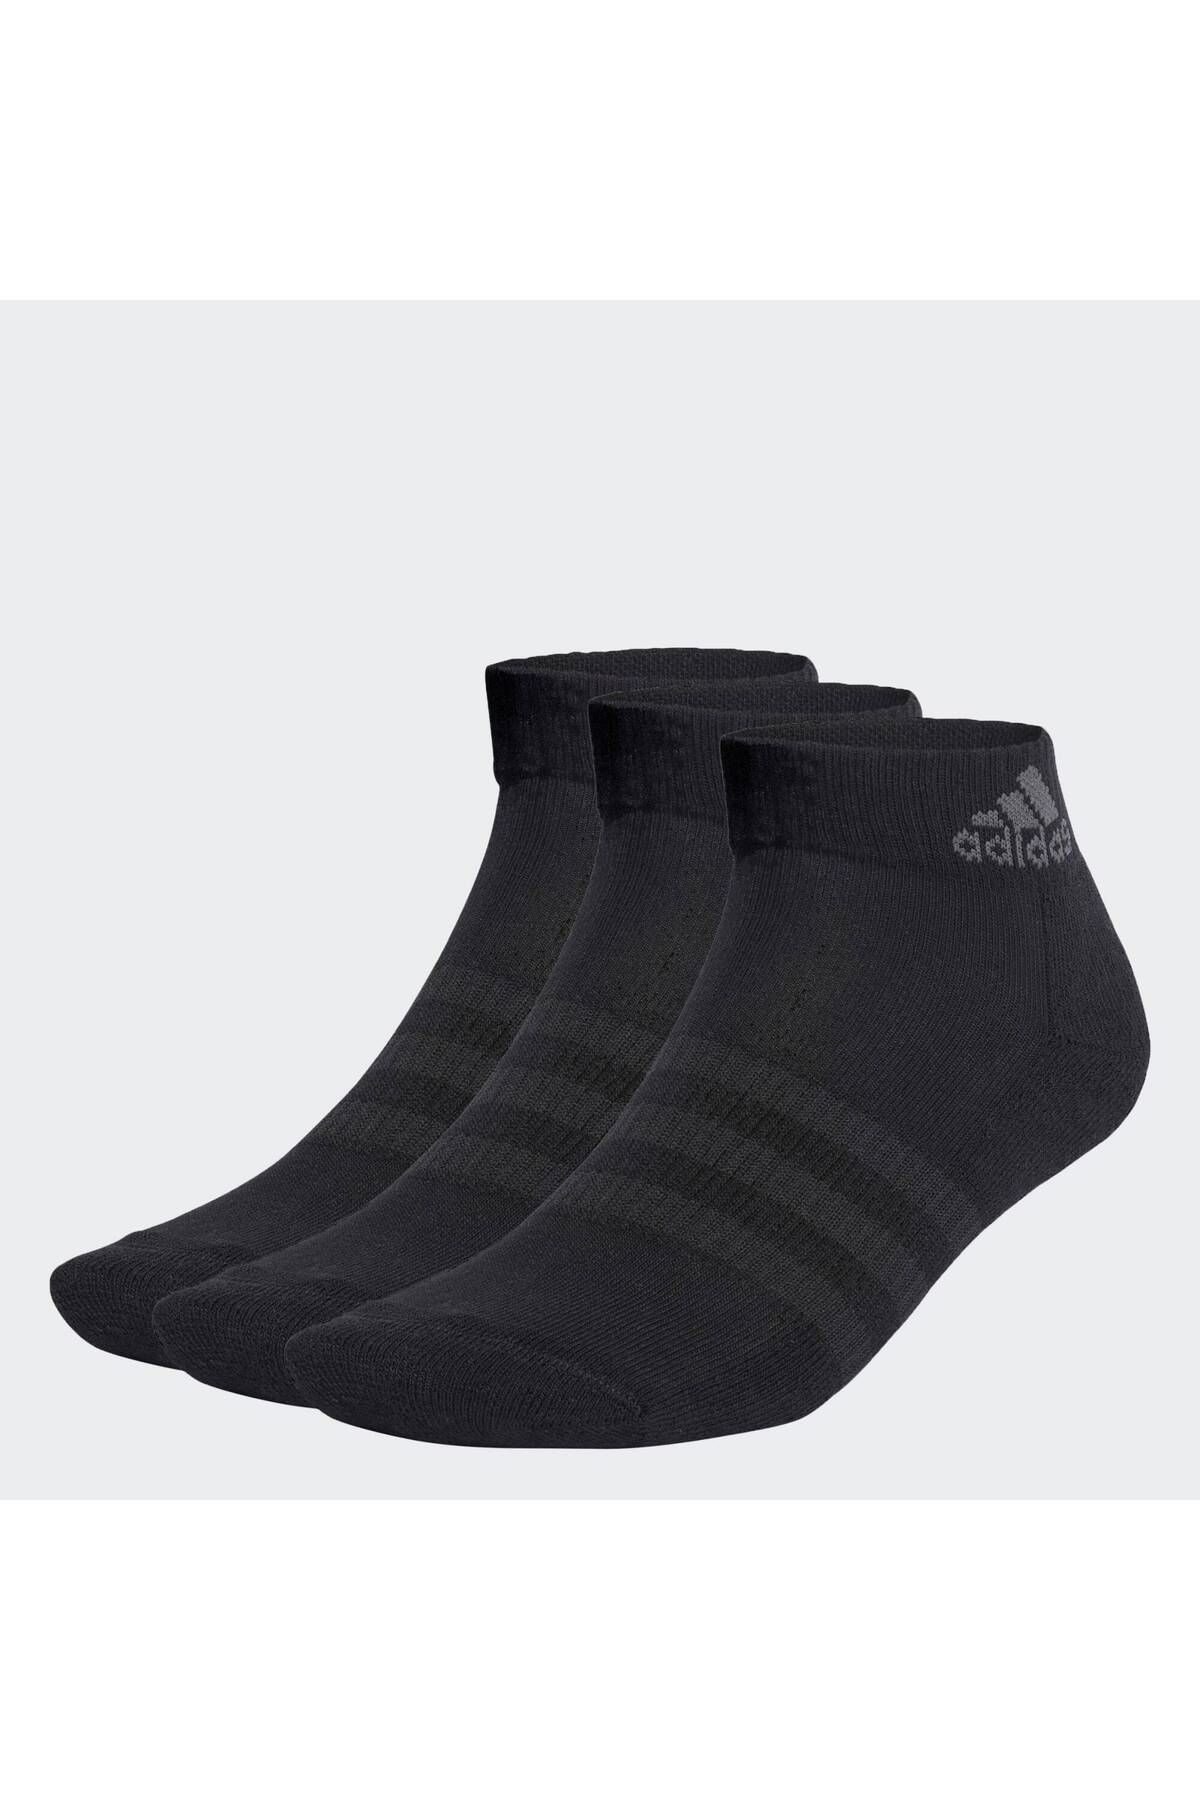 adidas Yastıklamalı Bilek Boy Çorap - 3 Çift